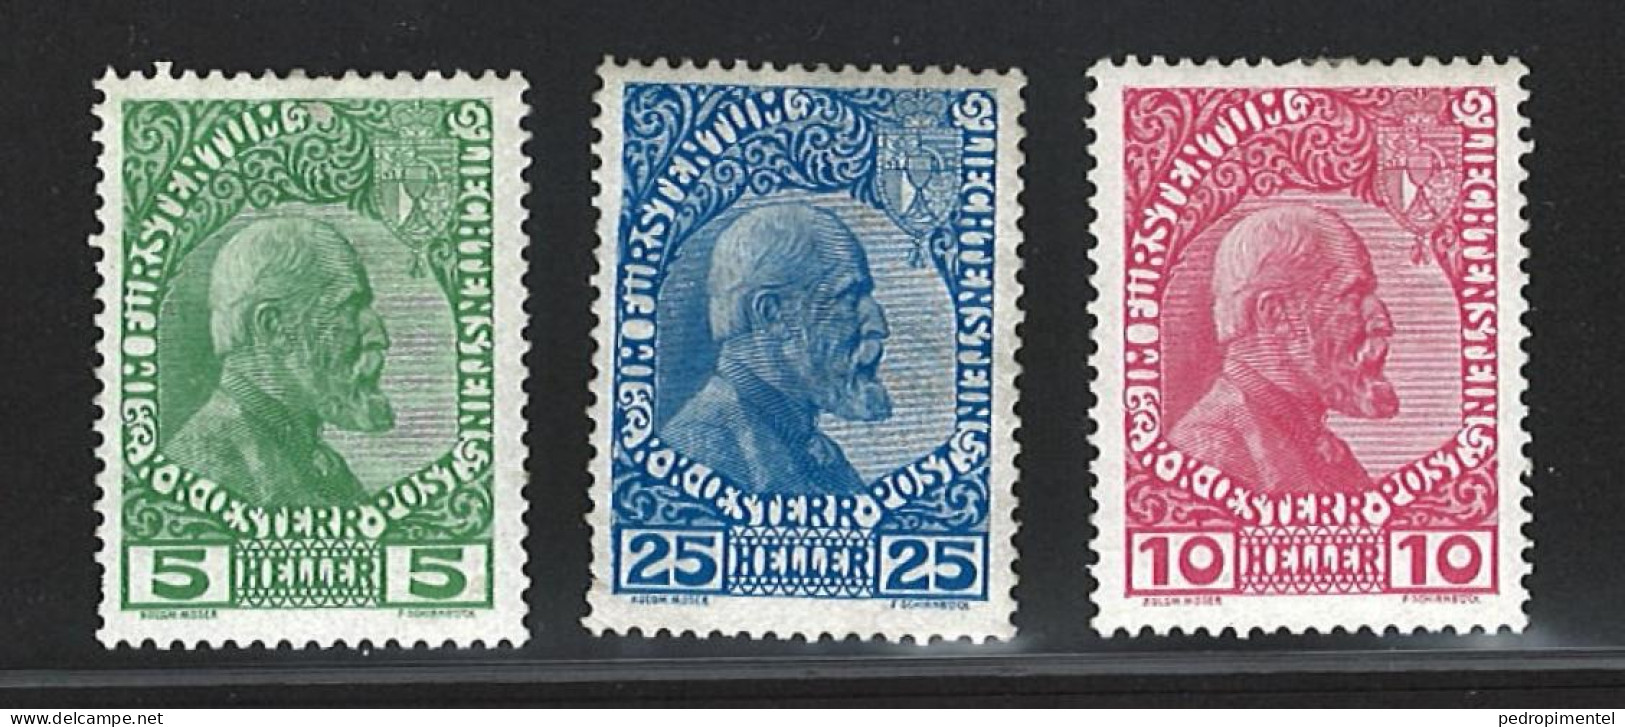 Liechtenstein Stamps | Prince Johan II | Perf 12 1/12 X 13 | #1-3 MH - Unused Stamps